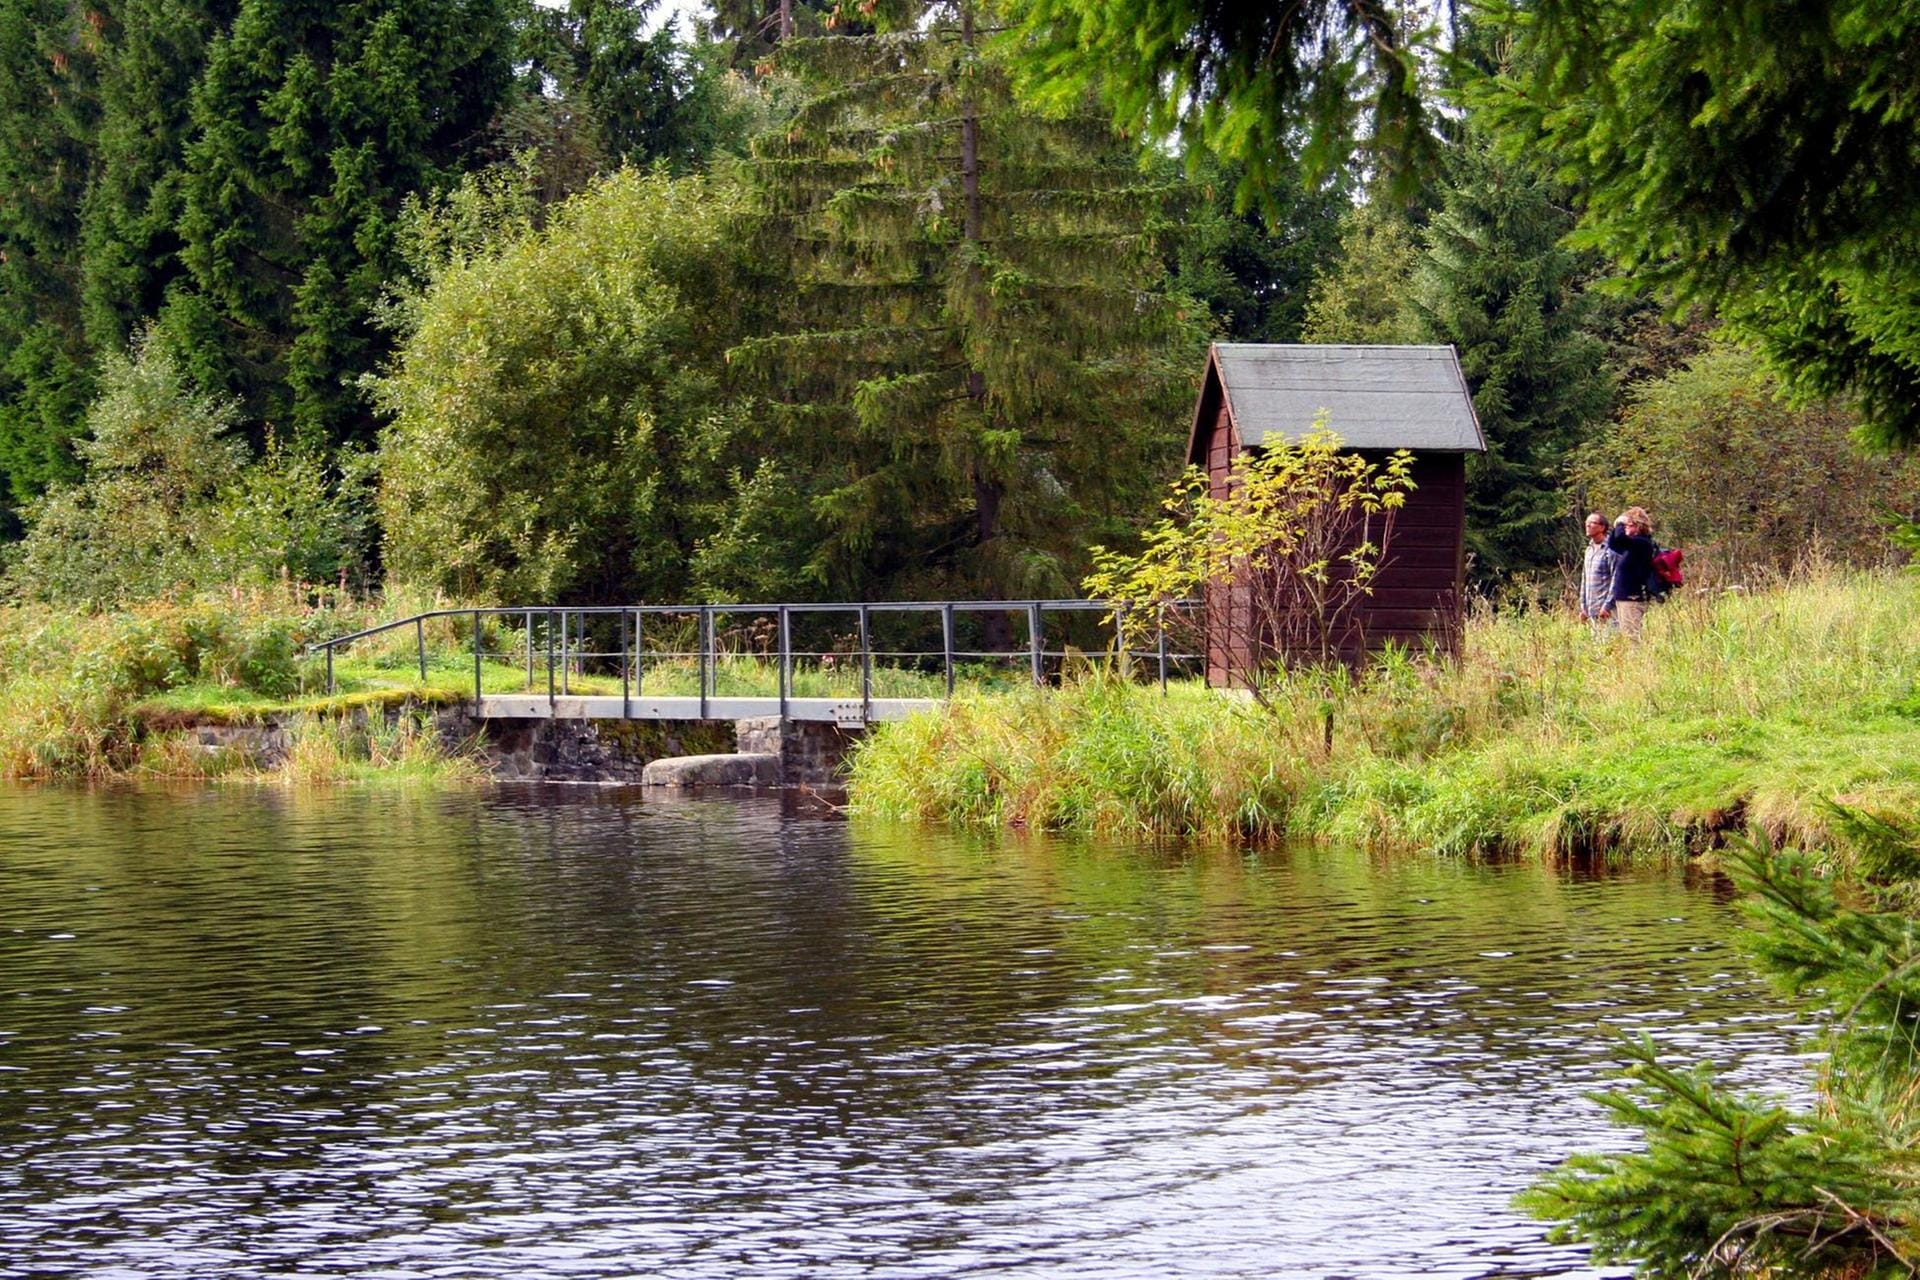 Im August 2010 wurde die "Oberharzer Wasserwirtschaft" in die Liste der Unesco-Welterbestätten aufgenommen. Die außergewöhnliche Anlage besteht aus historischen Teichen, Gräben und weiteren Wasserläufen.